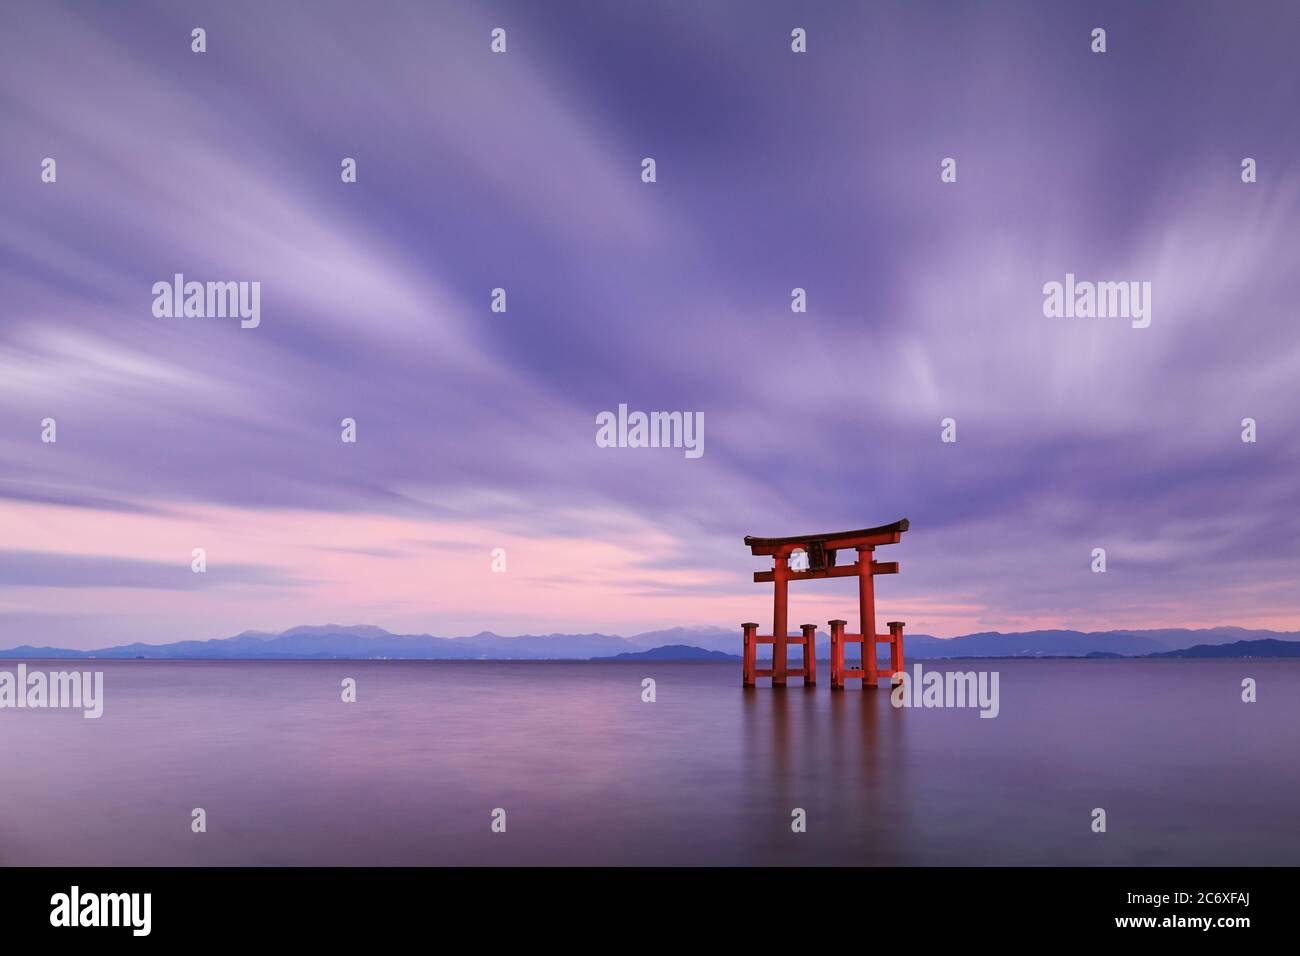 Foto a lunga esposizione del santuario Shirahige porta Torii al tramonto sul lago Biwa, Prefettura di Shiga, Giappone Foto Stock